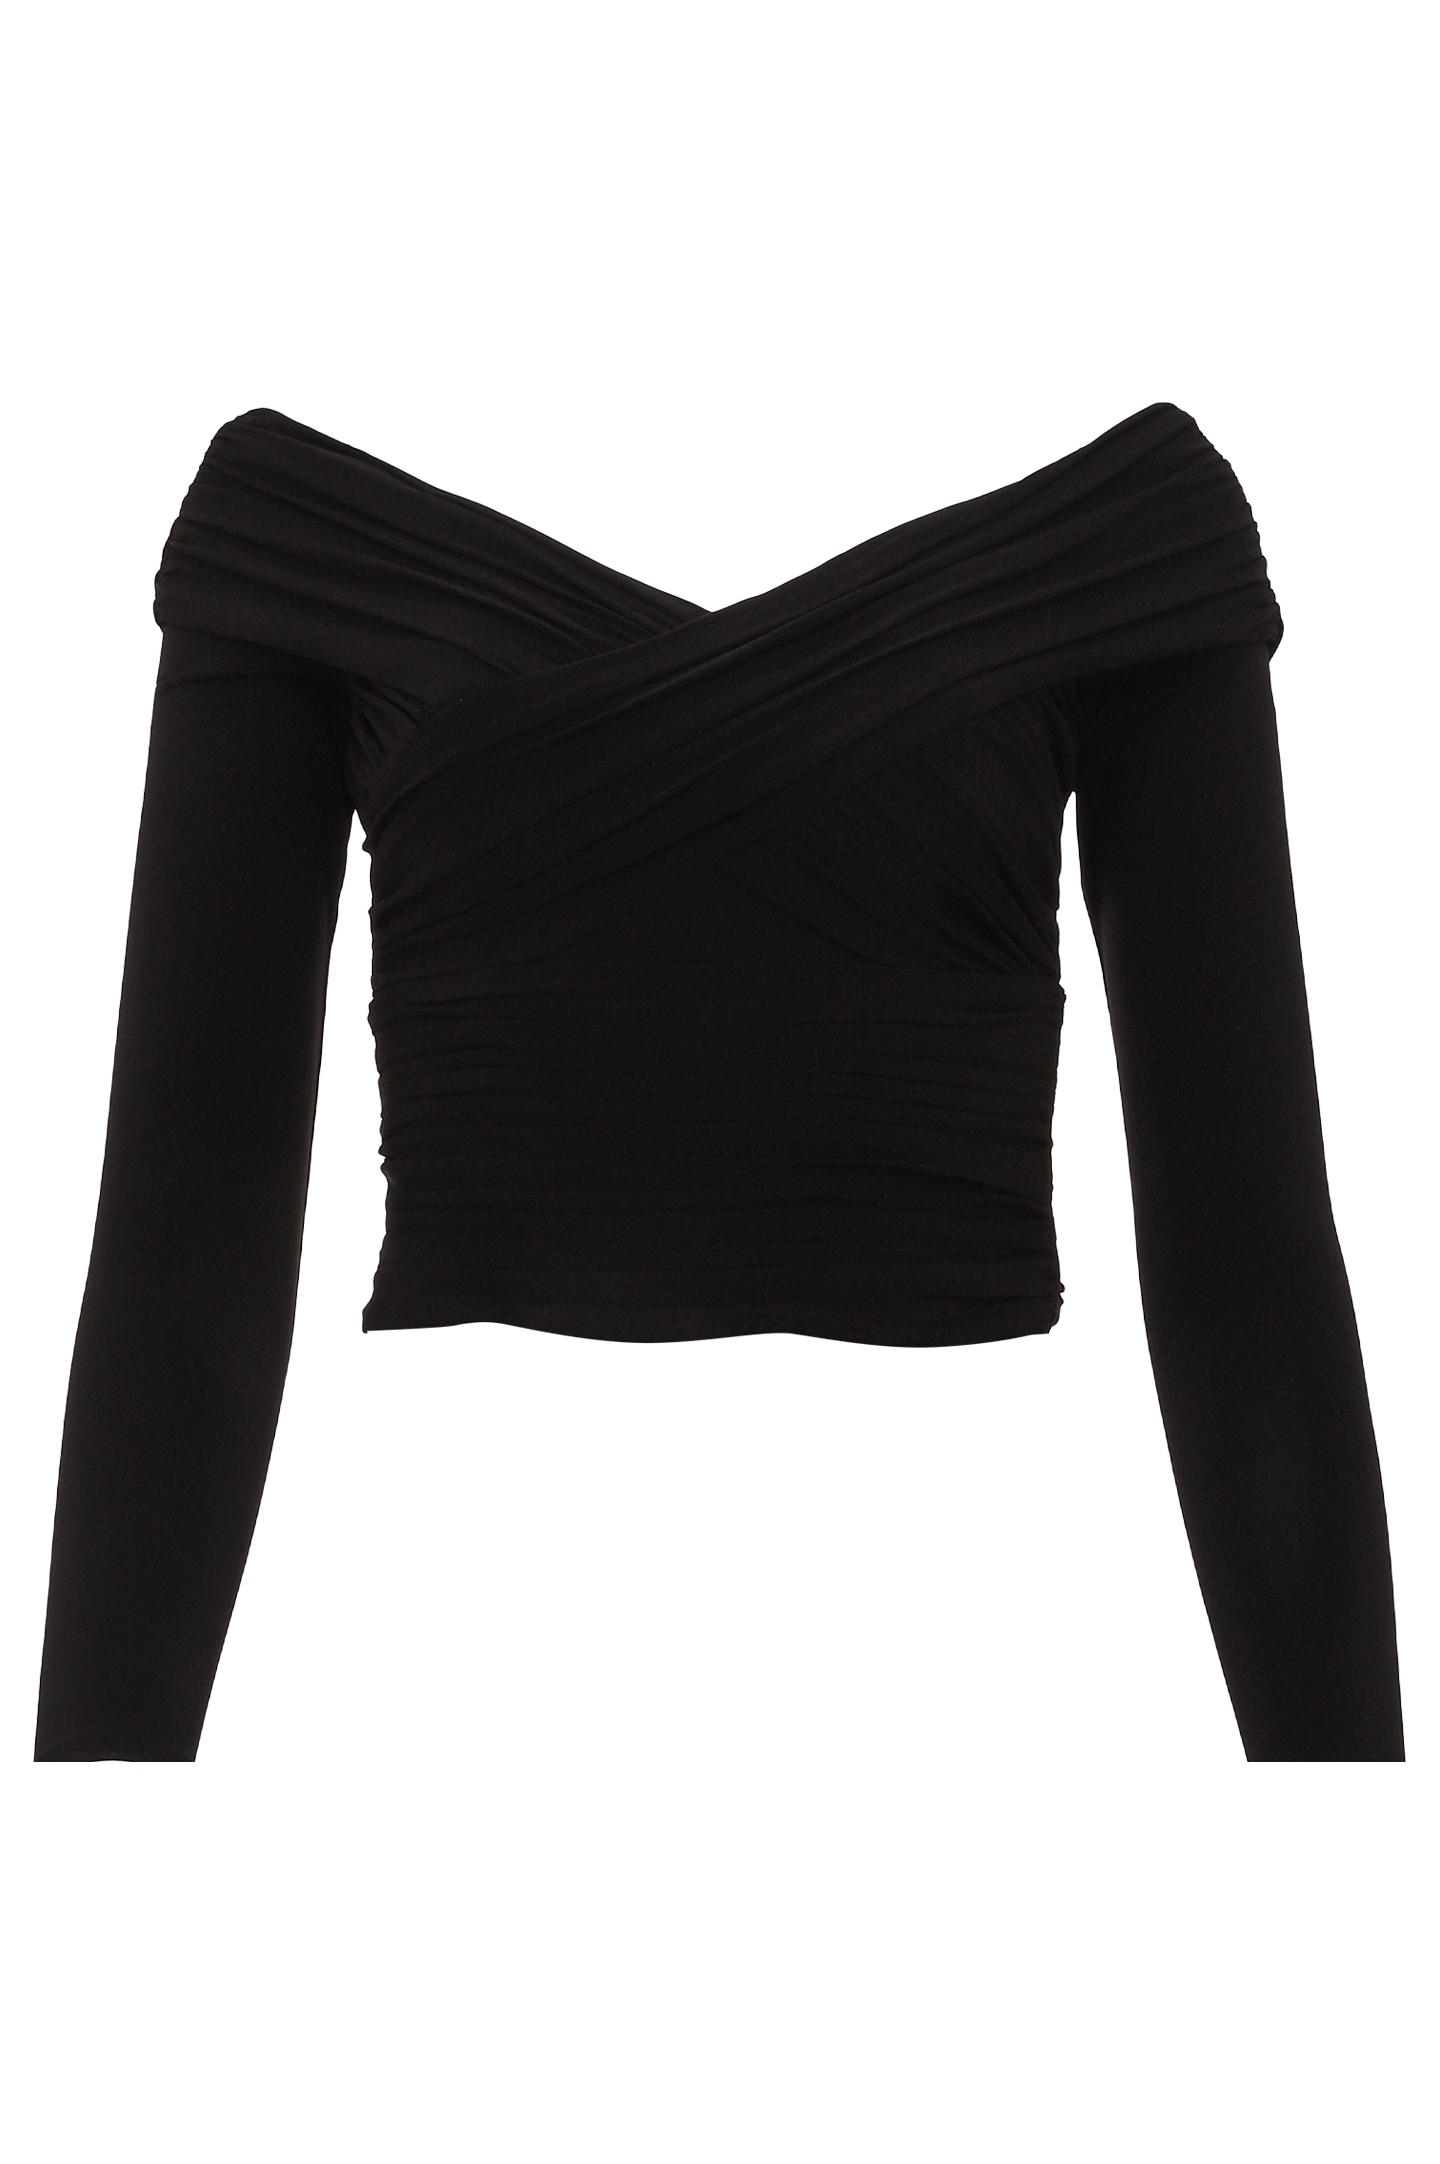 Блуза SELF PORTRAIT RS22-110T, цвет: Черный, Женский